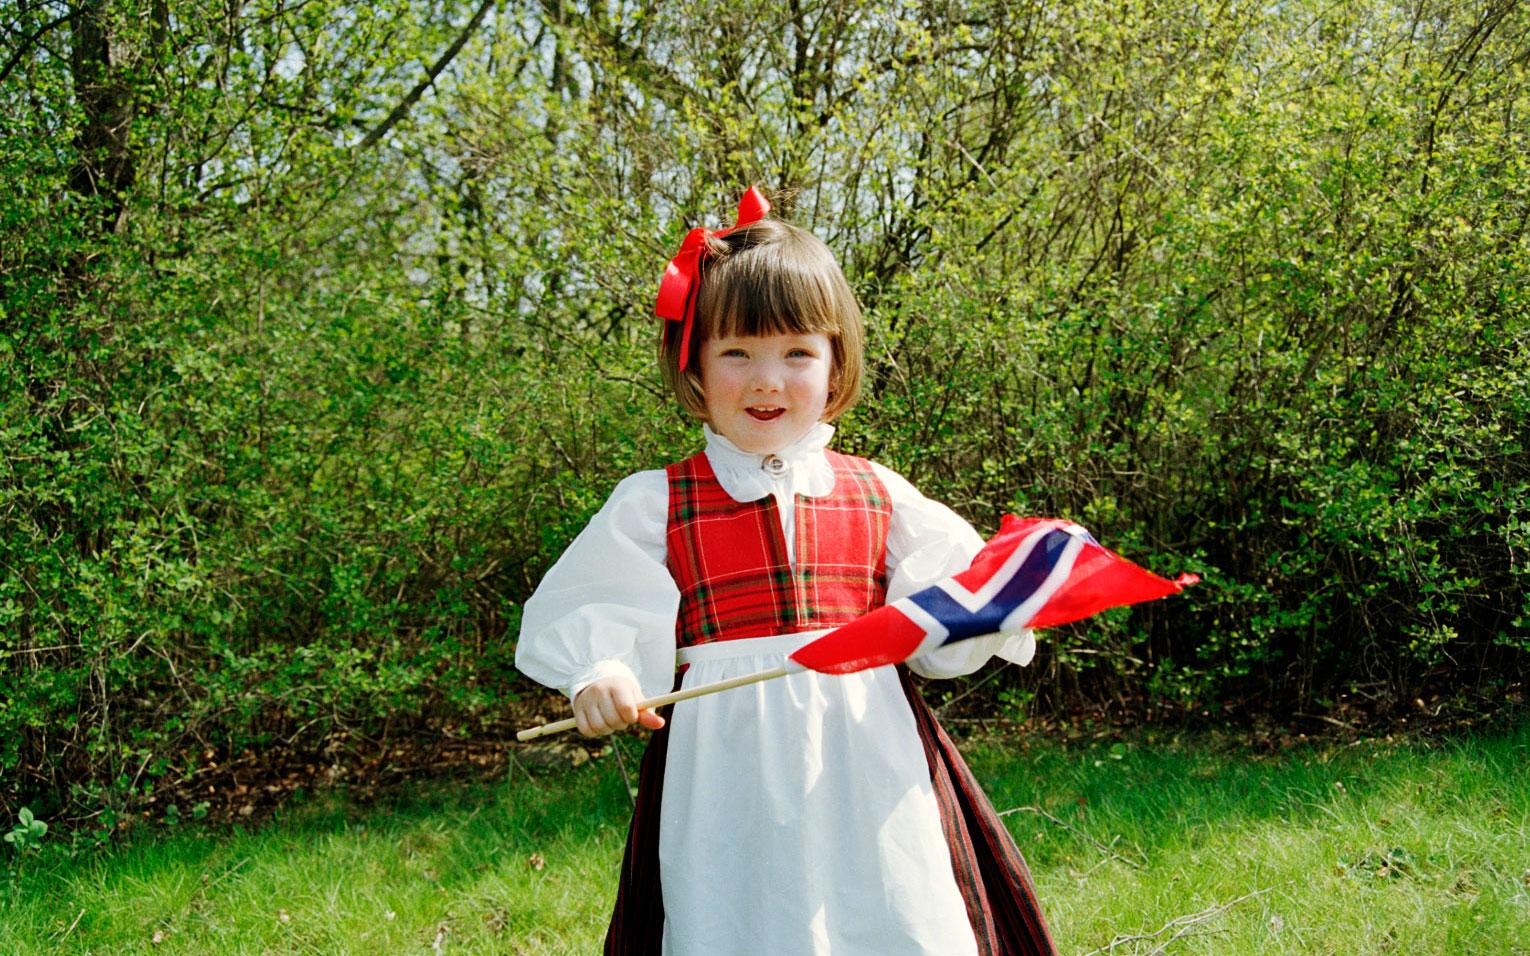 Pompa ståt, flaggor och sång. Därför firas 17 maj i Norge. 